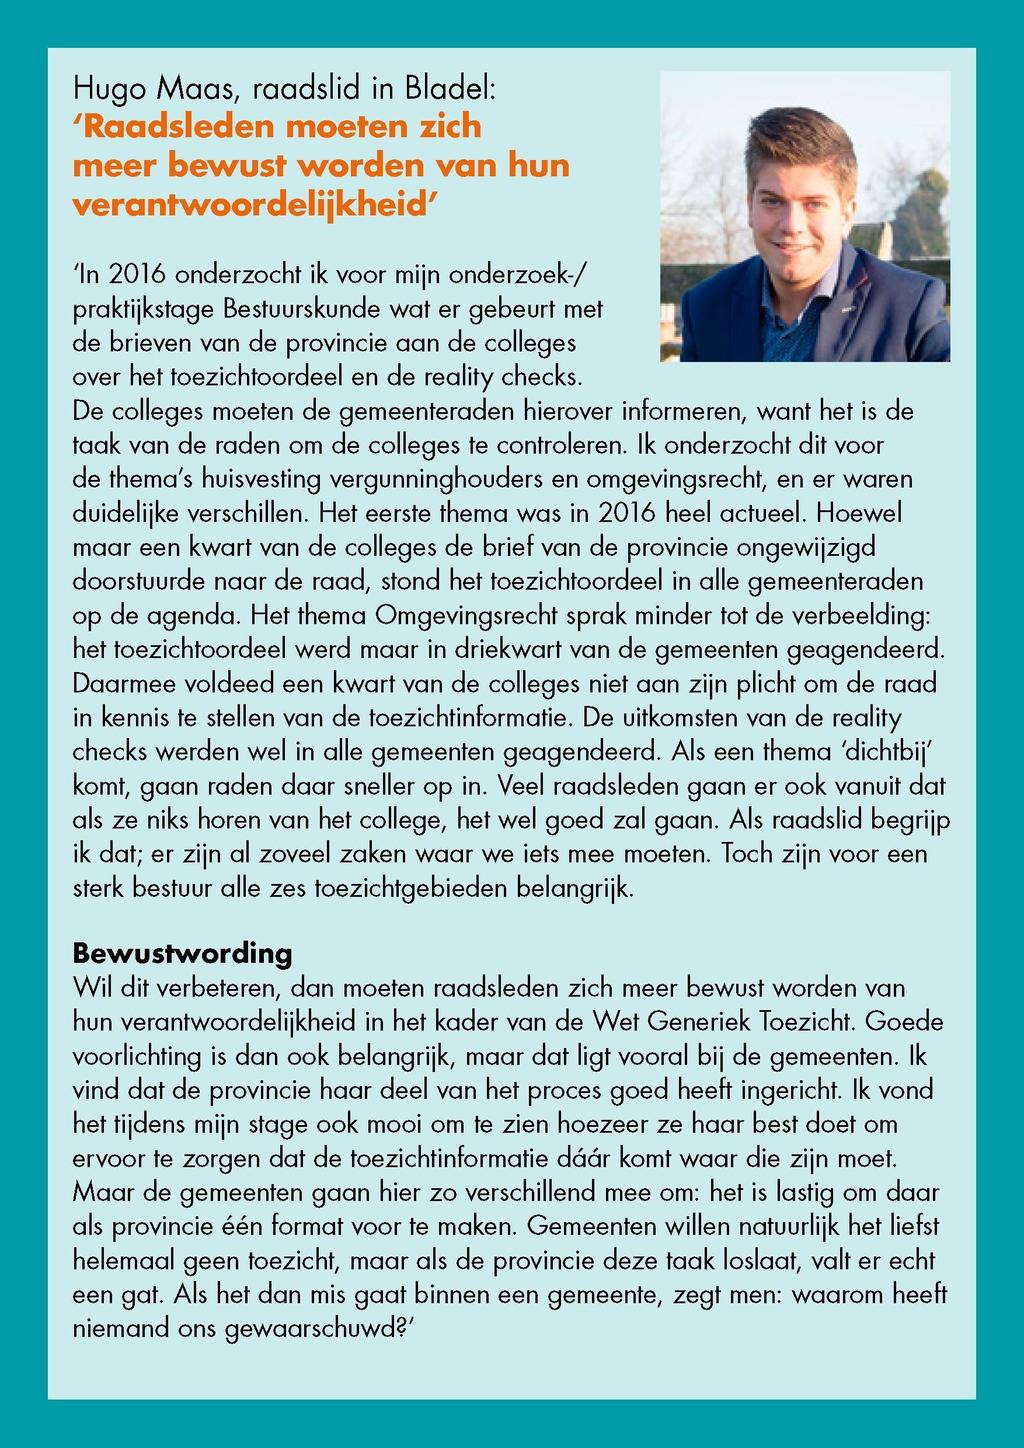 Hugo Maas, raadslid in Bladel: 'Raadsleden moeten zich meer bewust worden van hun verantwoordelijkheid' 'In 2016 onderzocht ik voor mijn onderzoek-/ - praktijkstage Bestuurskunde wat er gebeurt met